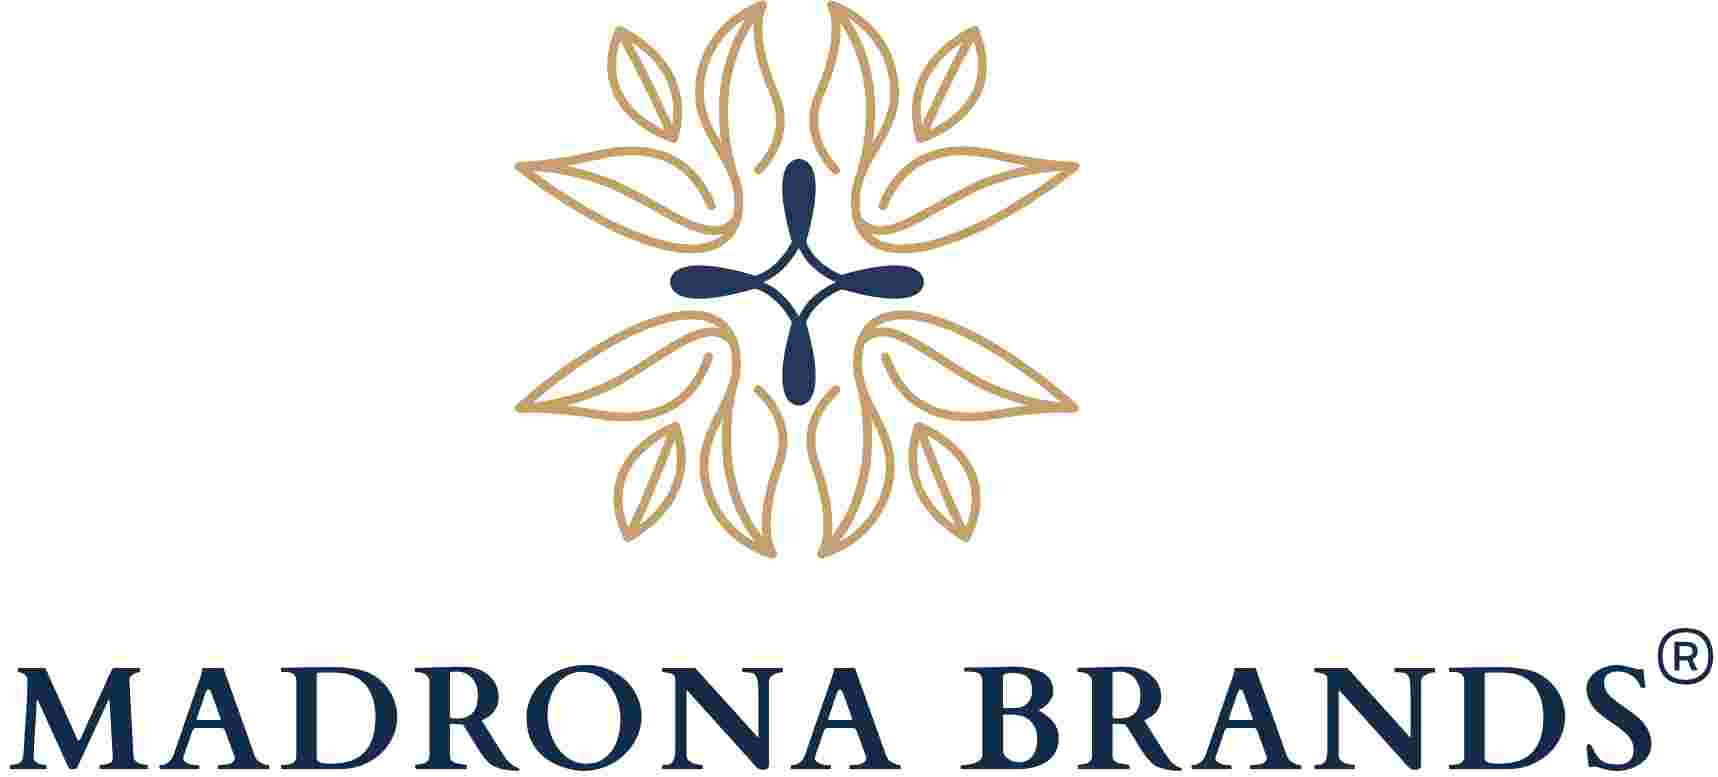 Madrona Brands logo